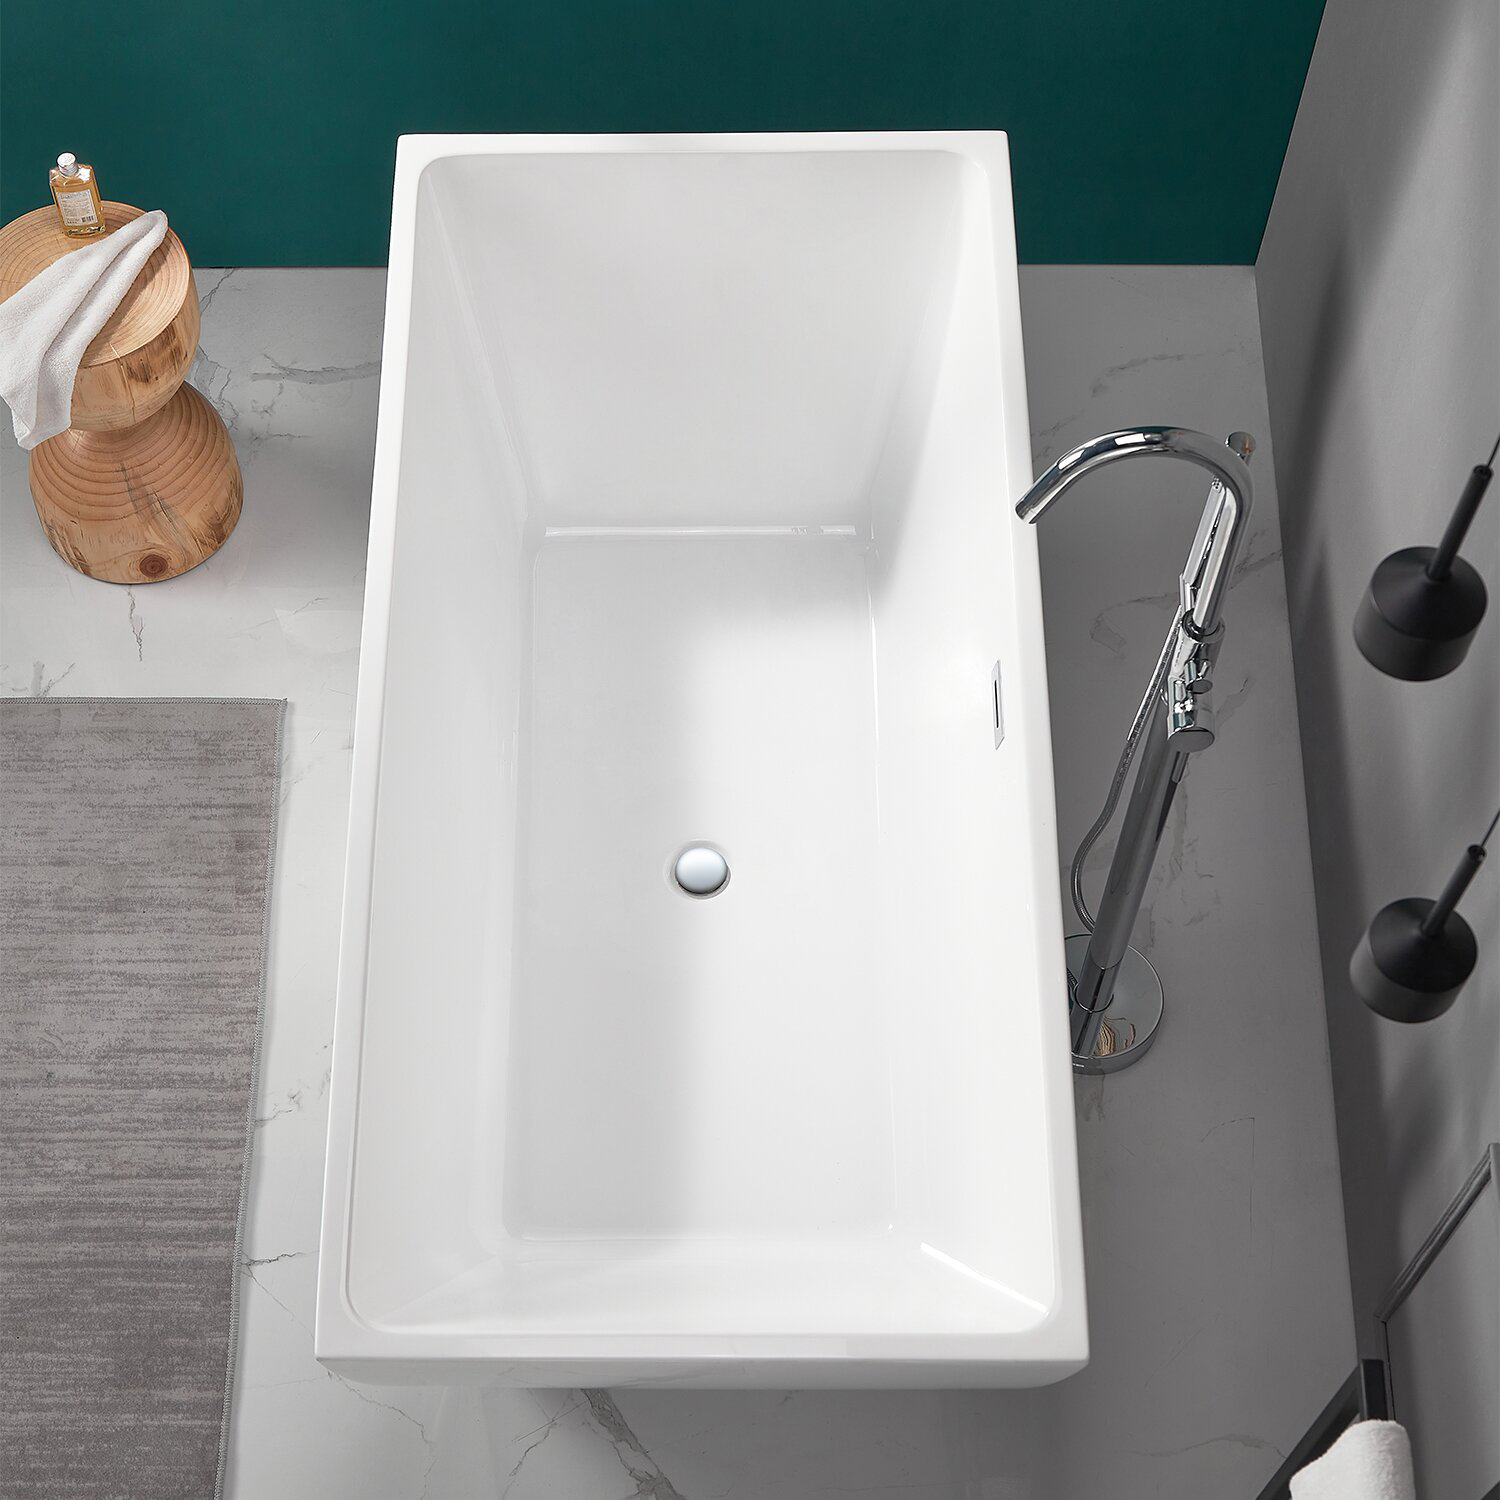 cUPC Noord-Amerika luxe badkamer badkuipen Klassiek vrijstaand bad van acryl